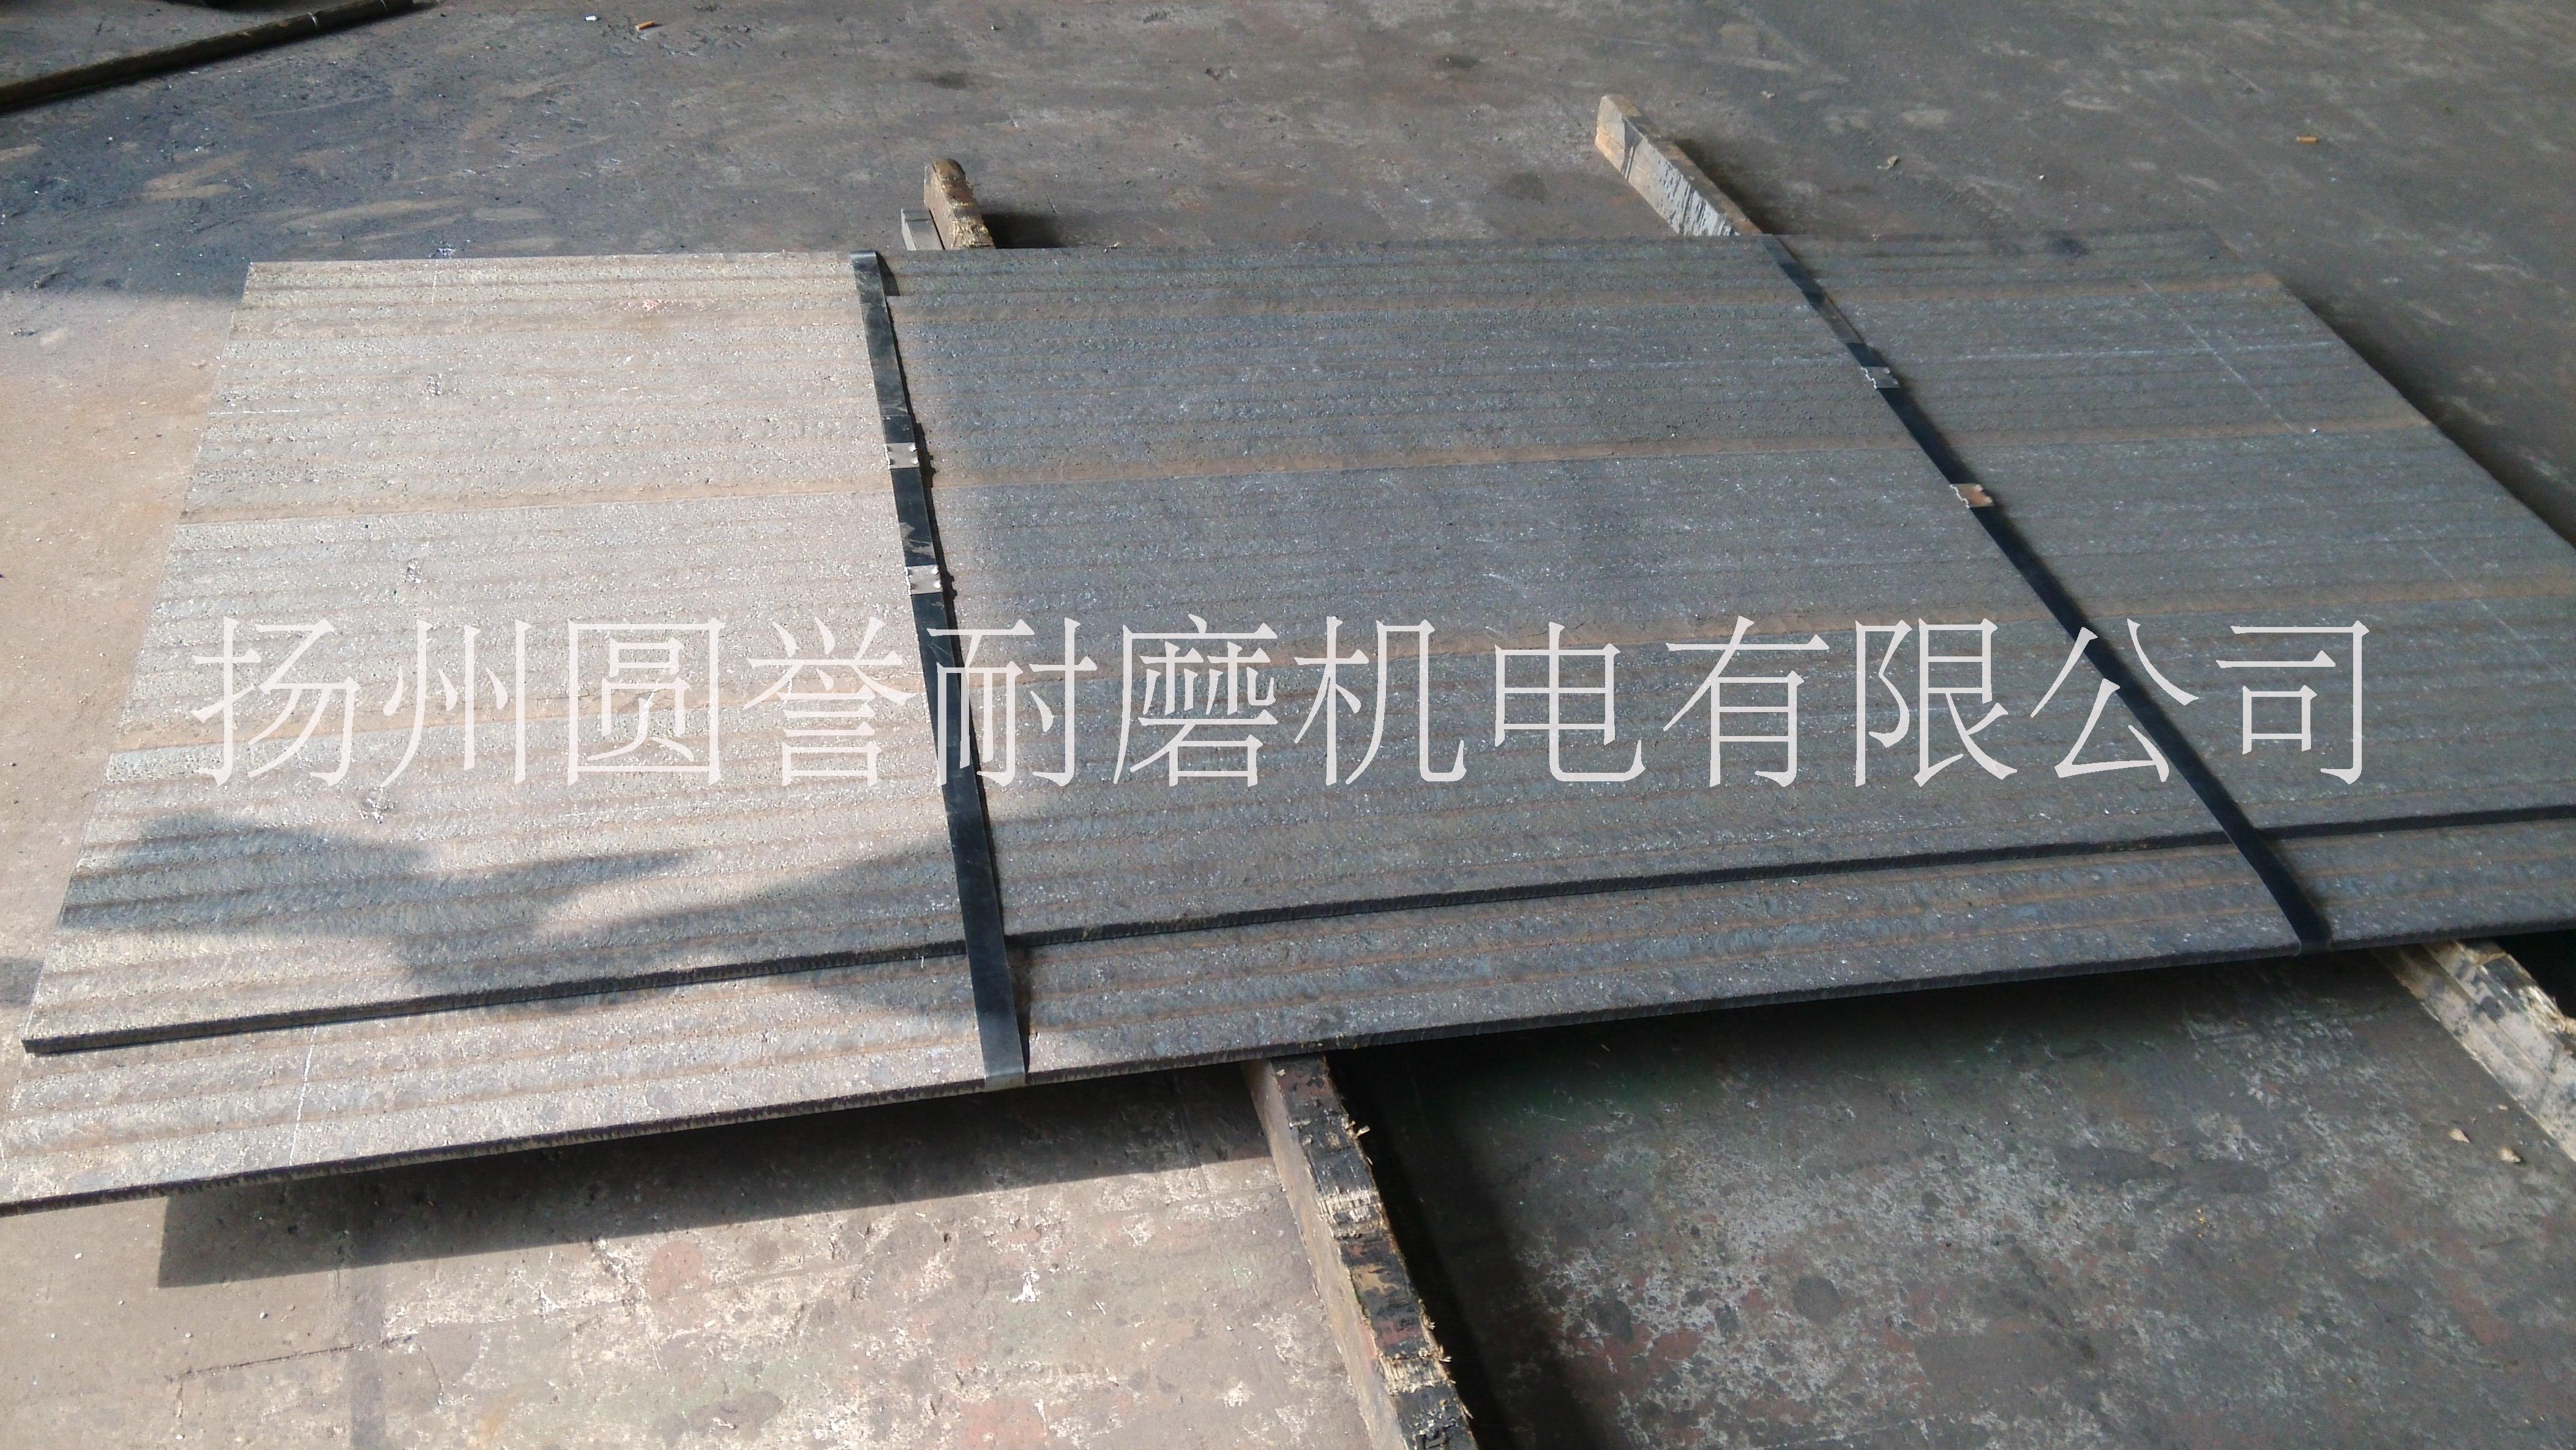 堆焊耐磨钢板